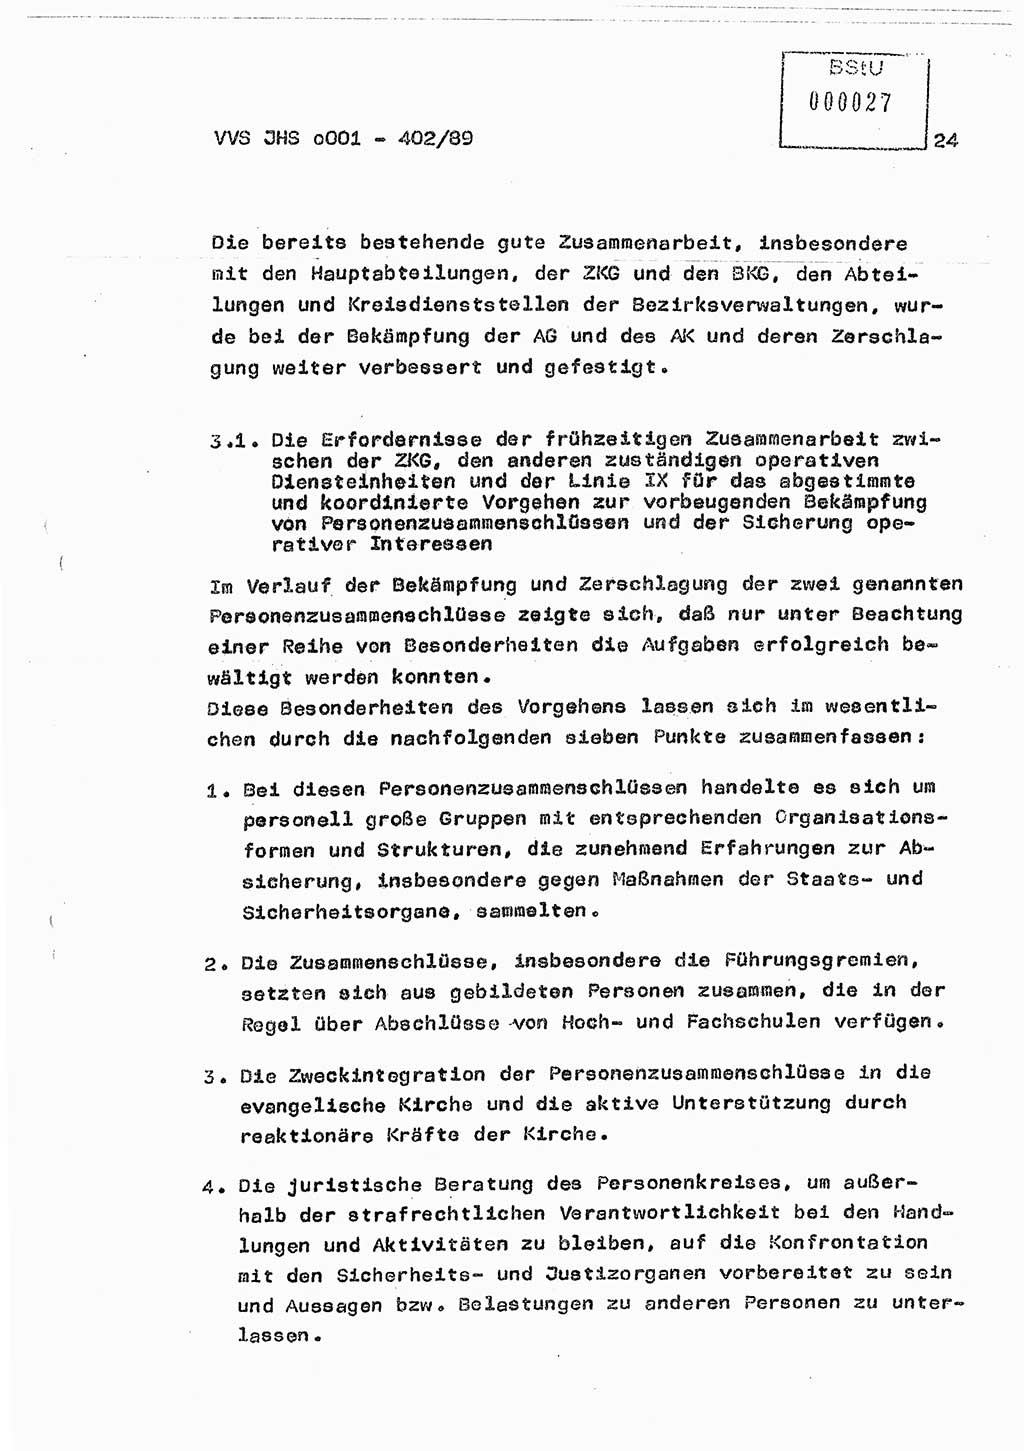 Diplomarbeit Major Günter Müller (HA Ⅸ/9), Ministerium für Staatssicherheit (MfS) [Deutsche Demokratische Republik (DDR)], Juristische Hochschule (JHS), Vertrauliche Verschlußsache (VVS) o001-402/89, Potsdam 1989, Seite 24 (Dipl.-Arb. MfS DDR JHS VVS o001-402/89 1989, S. 24)